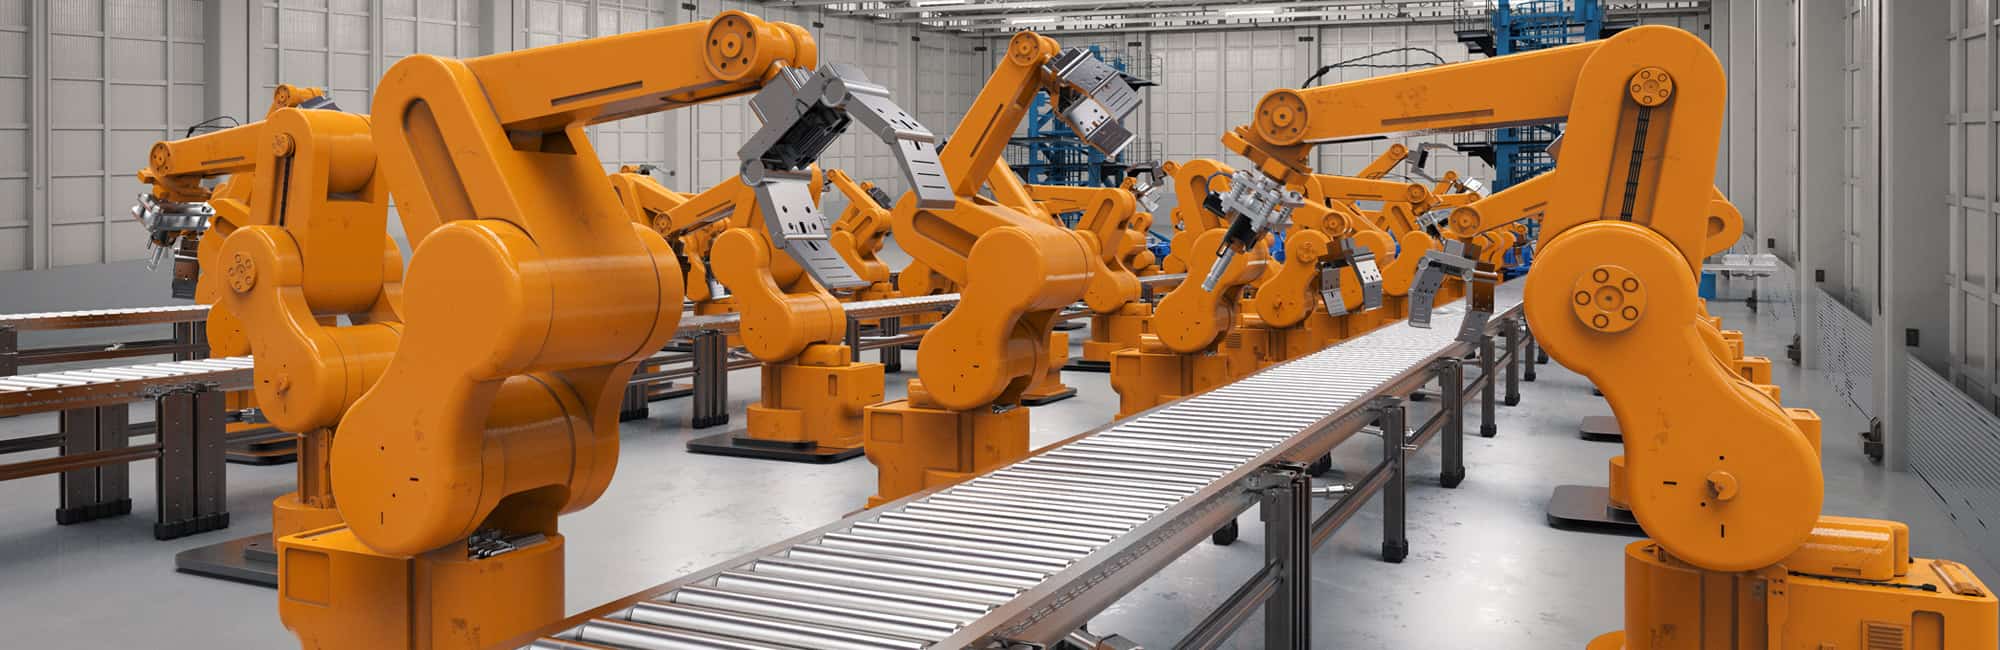 Machinery & Robotics